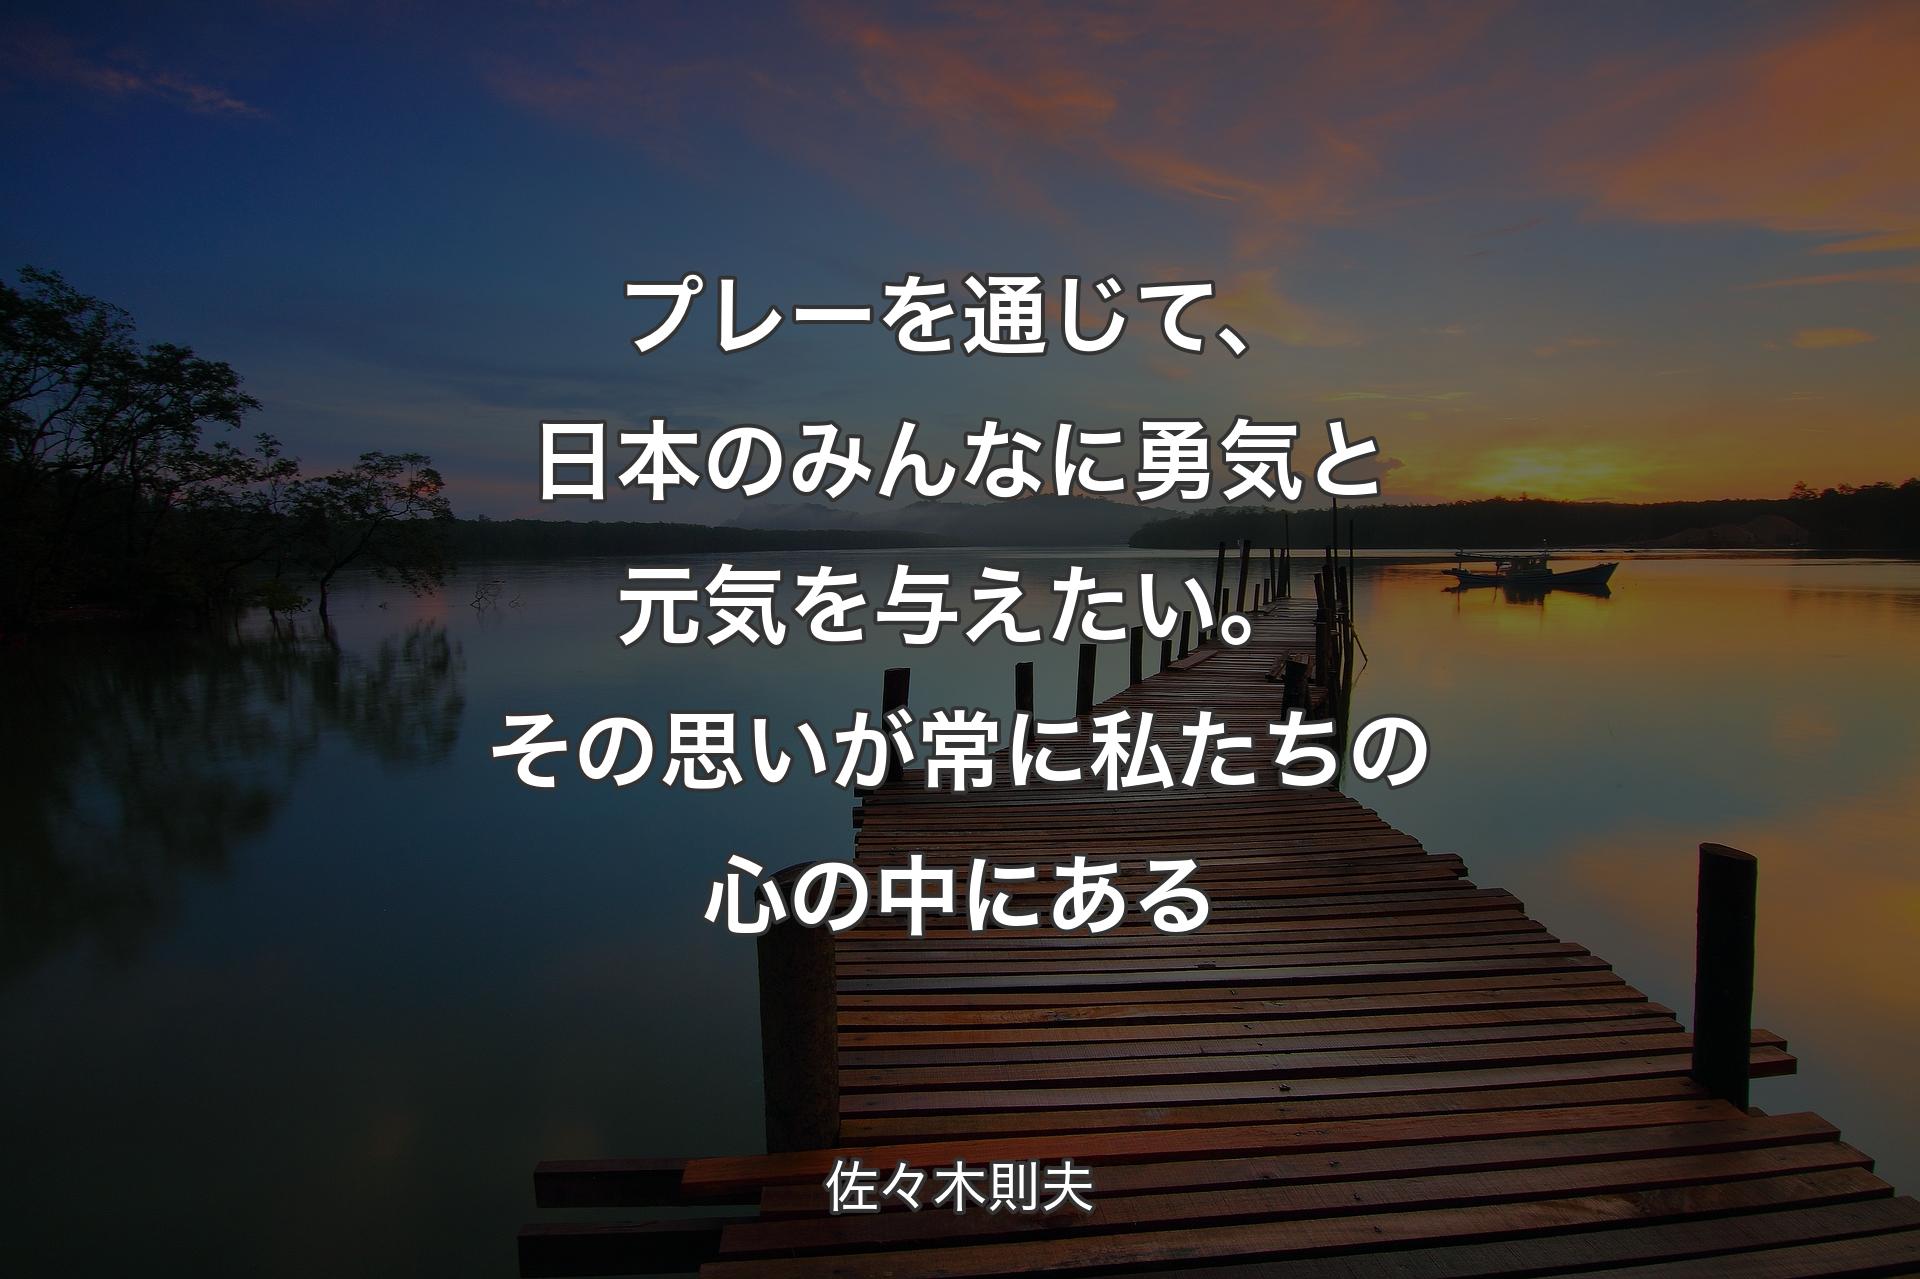 【背景3】プレーを通じて、日本の�みんなに勇気と元気を与えたい。その思いが常に私たちの心の中にある - 佐々木則夫